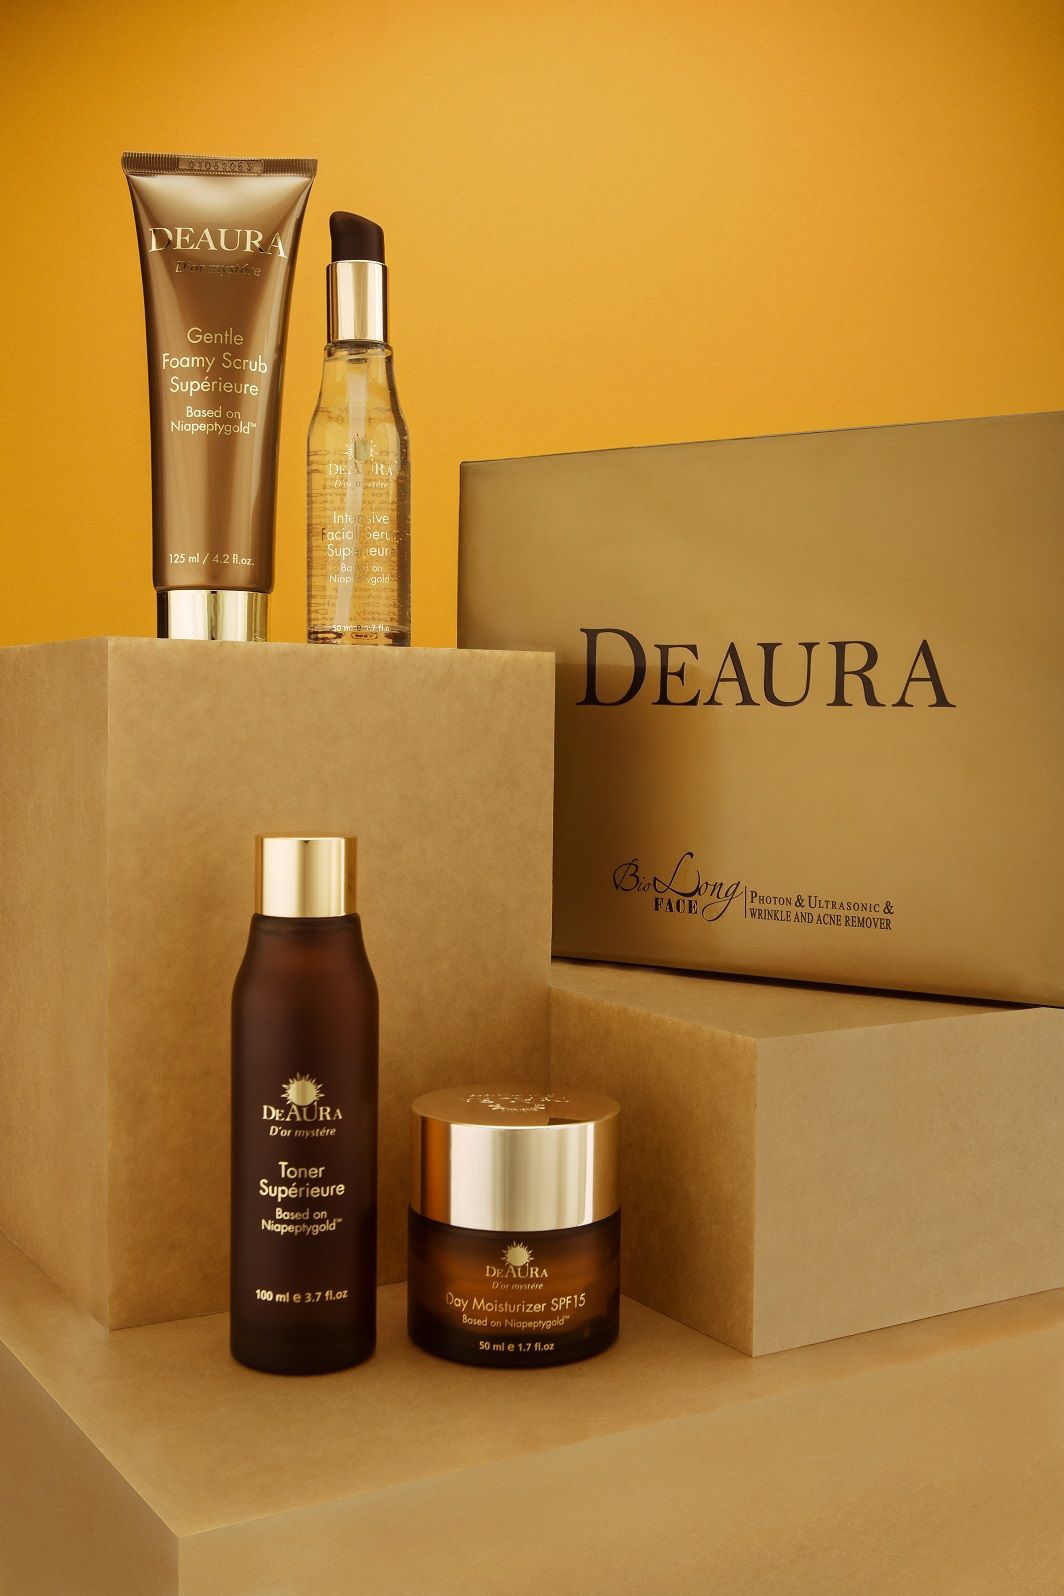 Bộ 10 mỹ phẩm DeAura nổi bật với thành phần chính là vàng 24karat giúp chống lão hóa cho làn da!